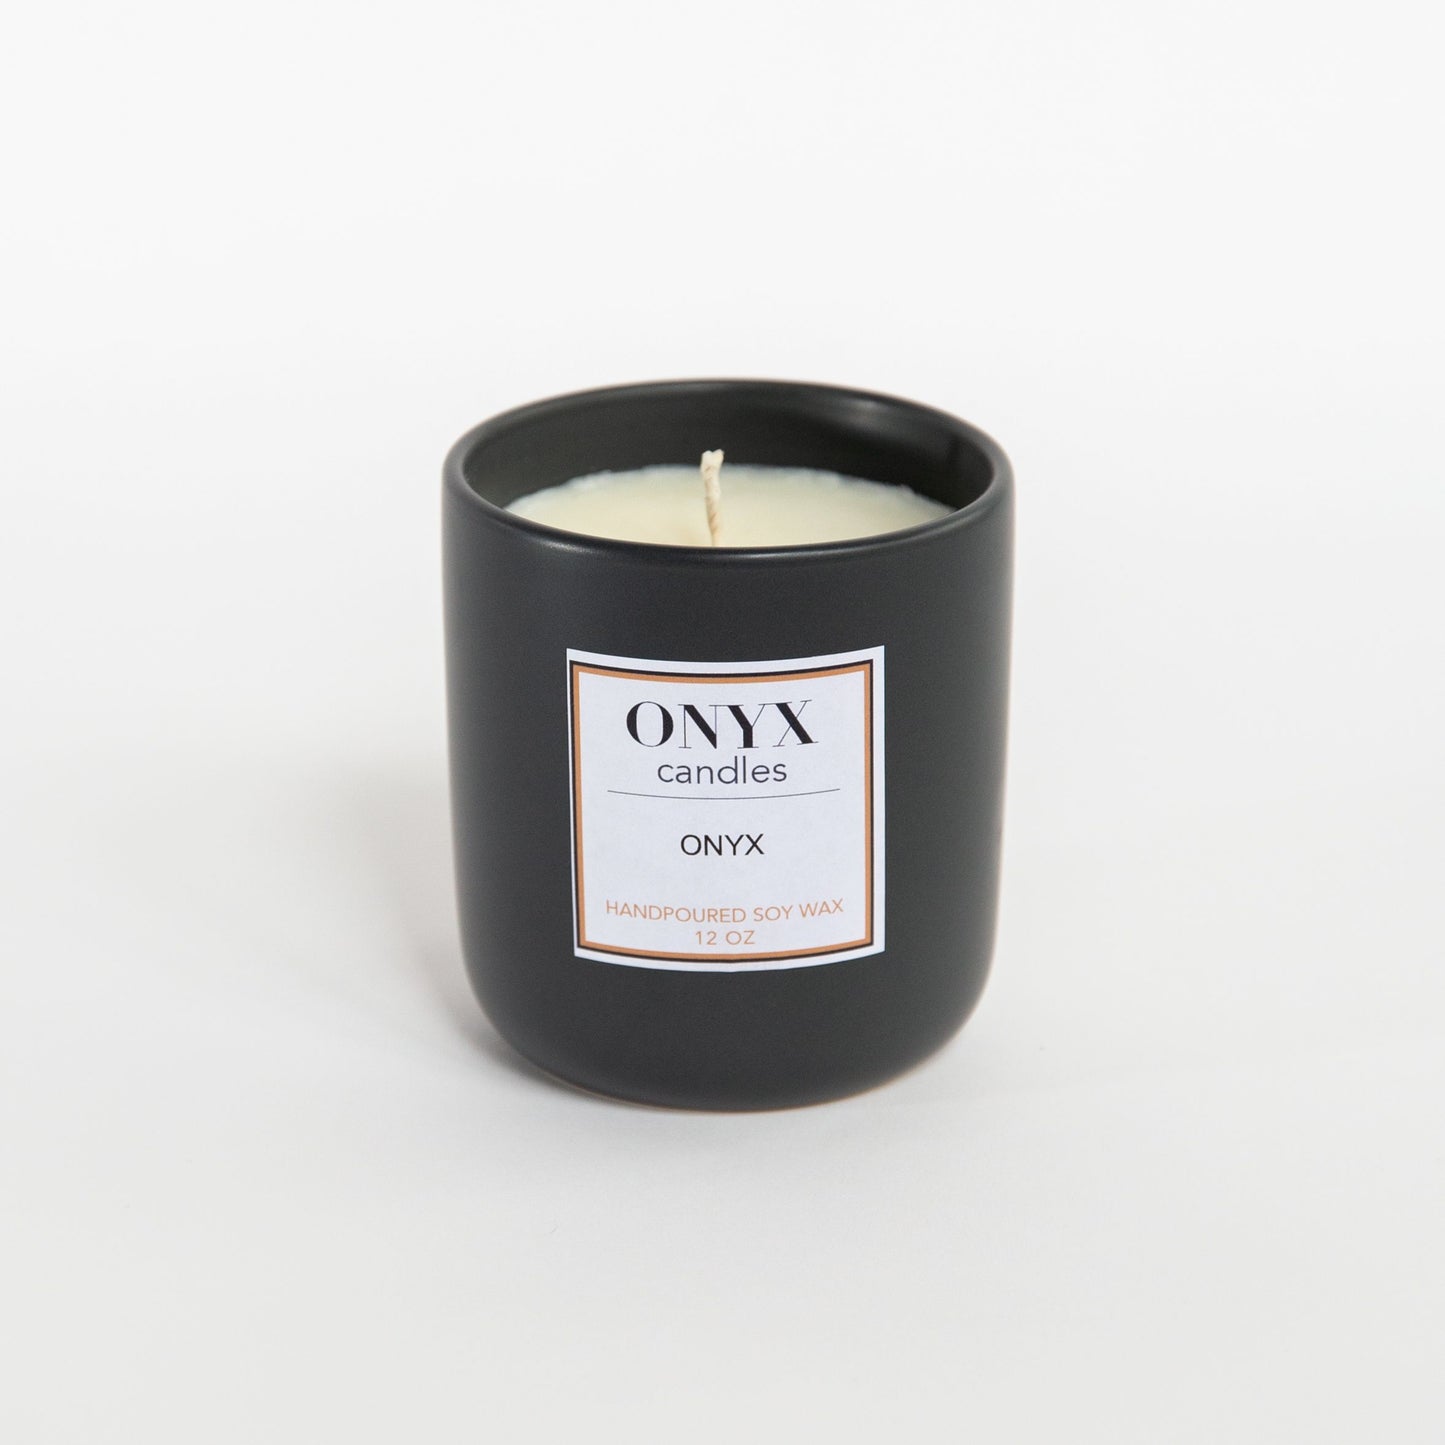 12oz matte black ceramic jar in Onyx signature scent